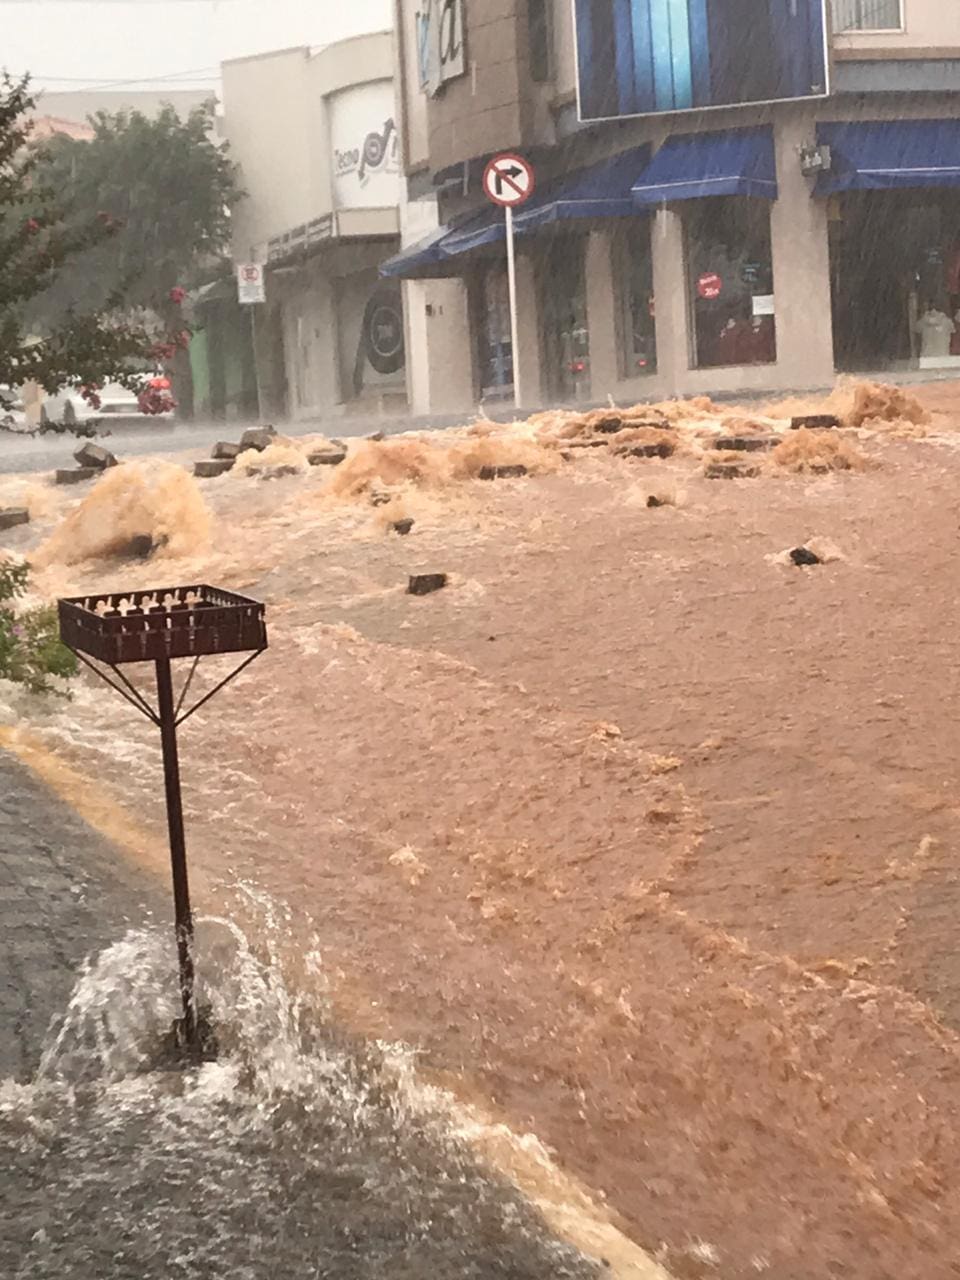 Imagens recebidas pelo Corpo de Bombeiros mostram a situação do município de Monte Sião durante o temporal